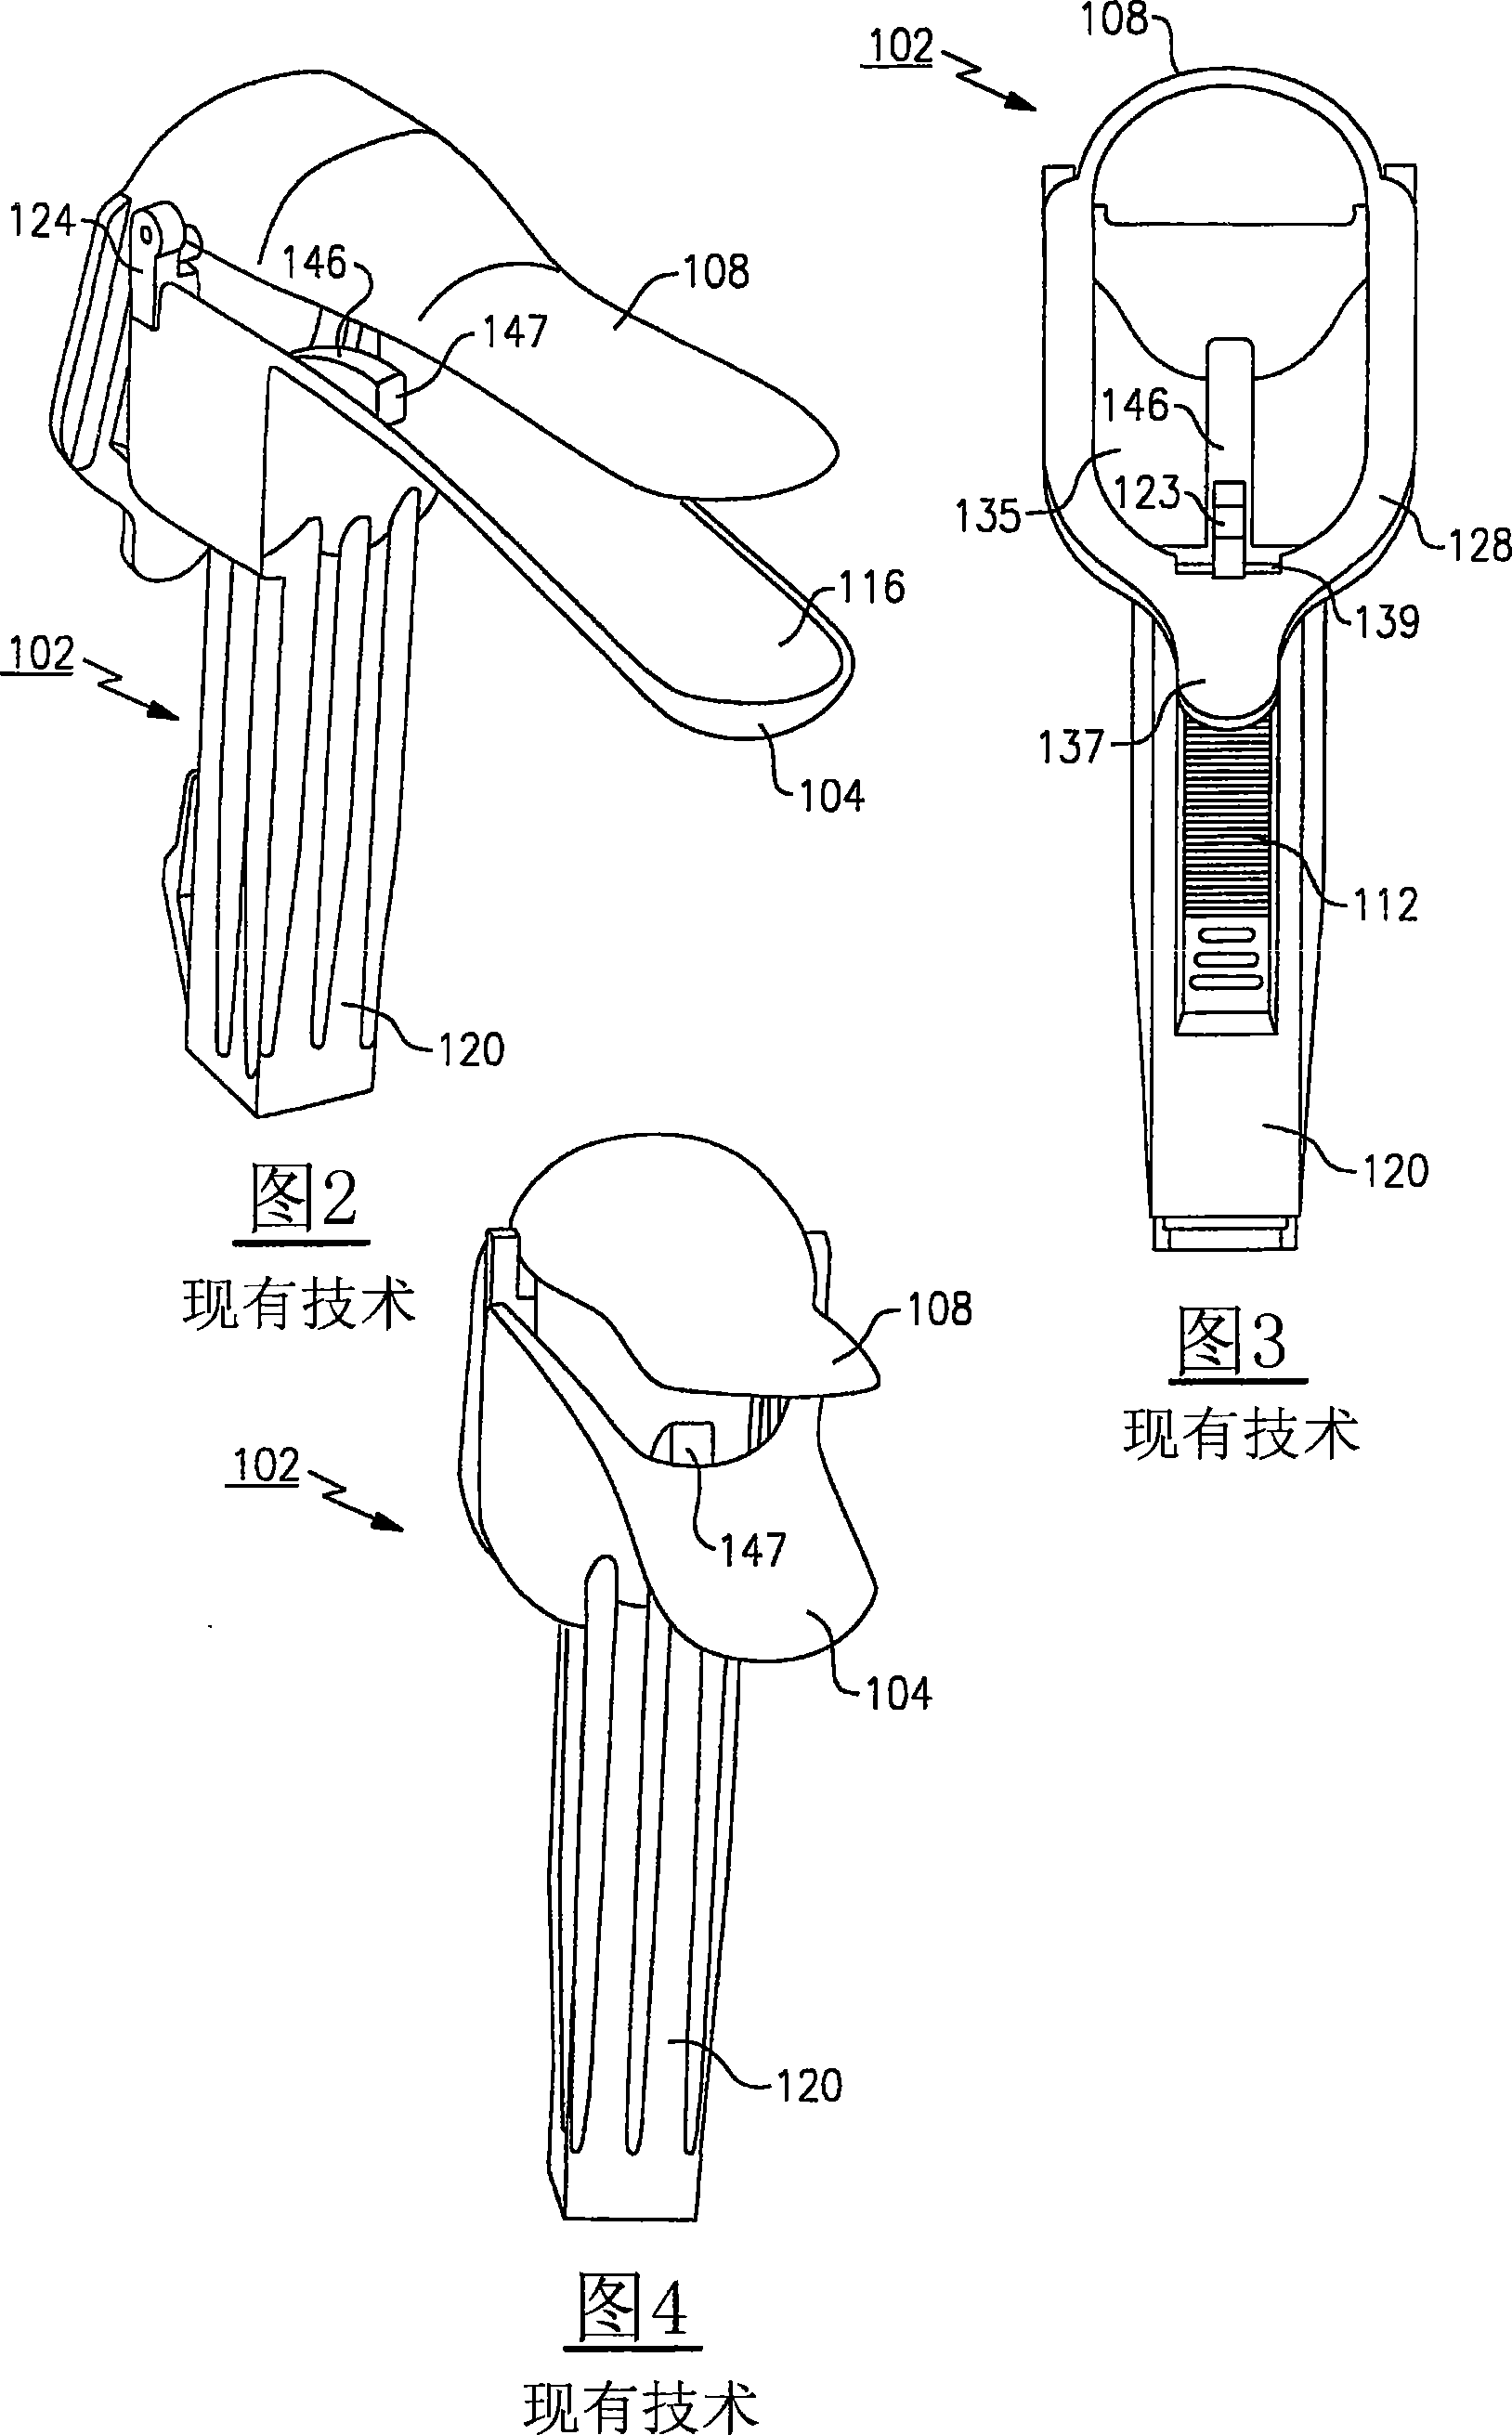 Vaginal speculum apparatus